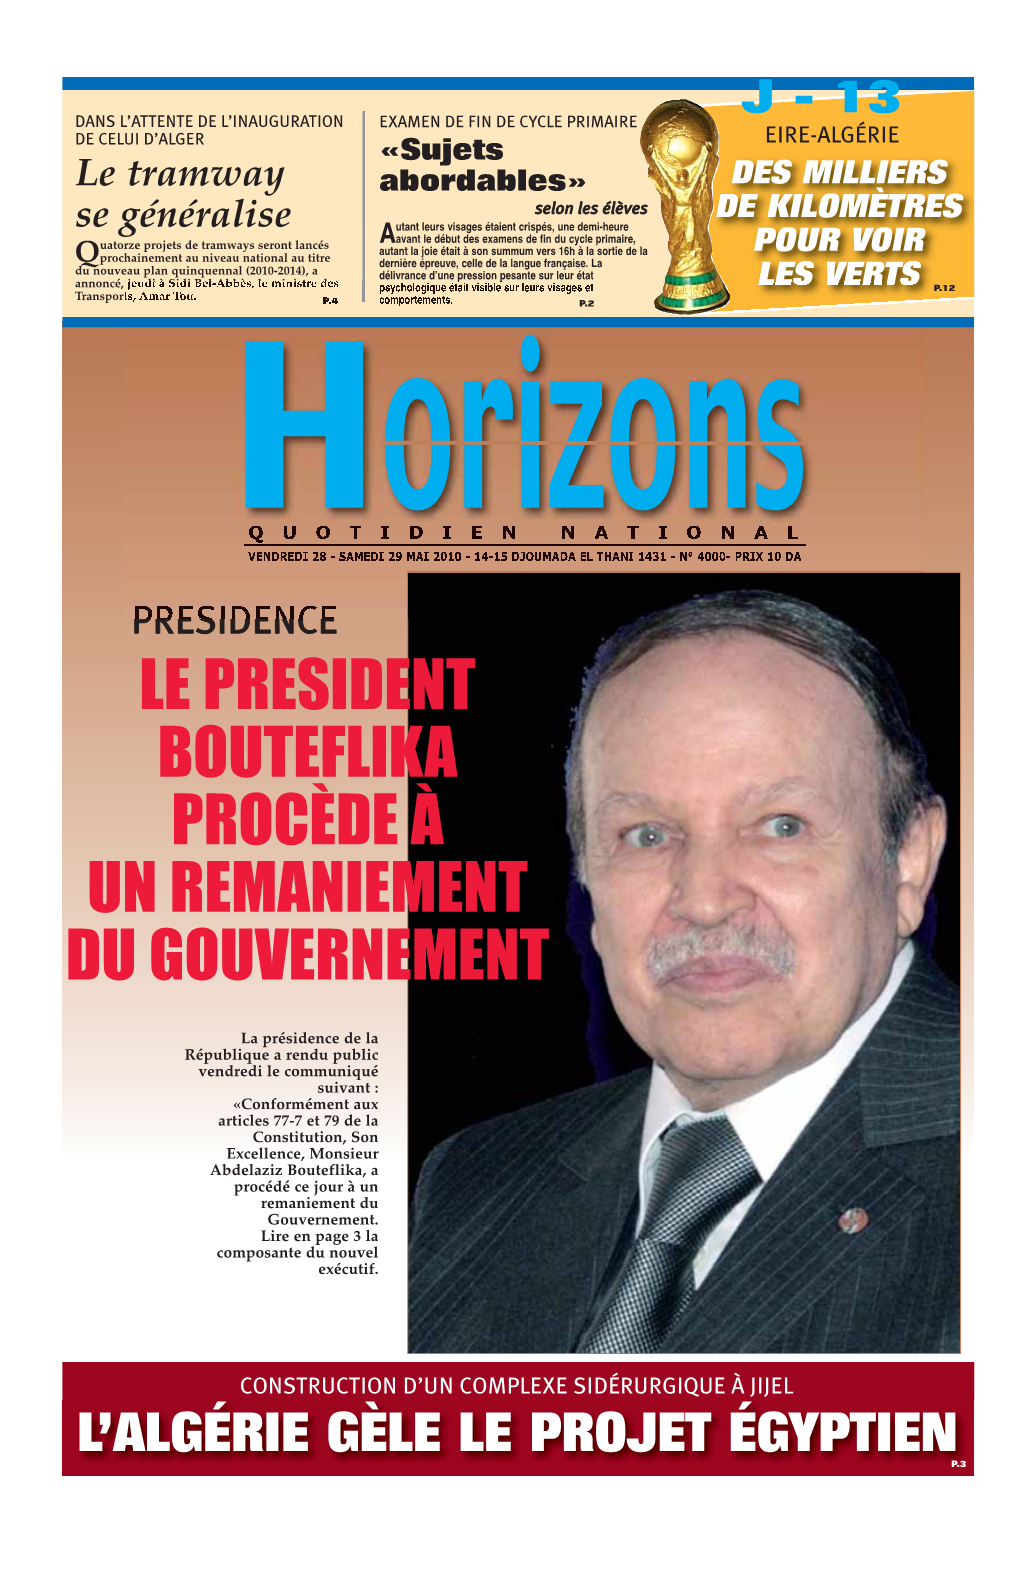 Le President Bouteflika Procède À Un Remaniement Du Gouvernement